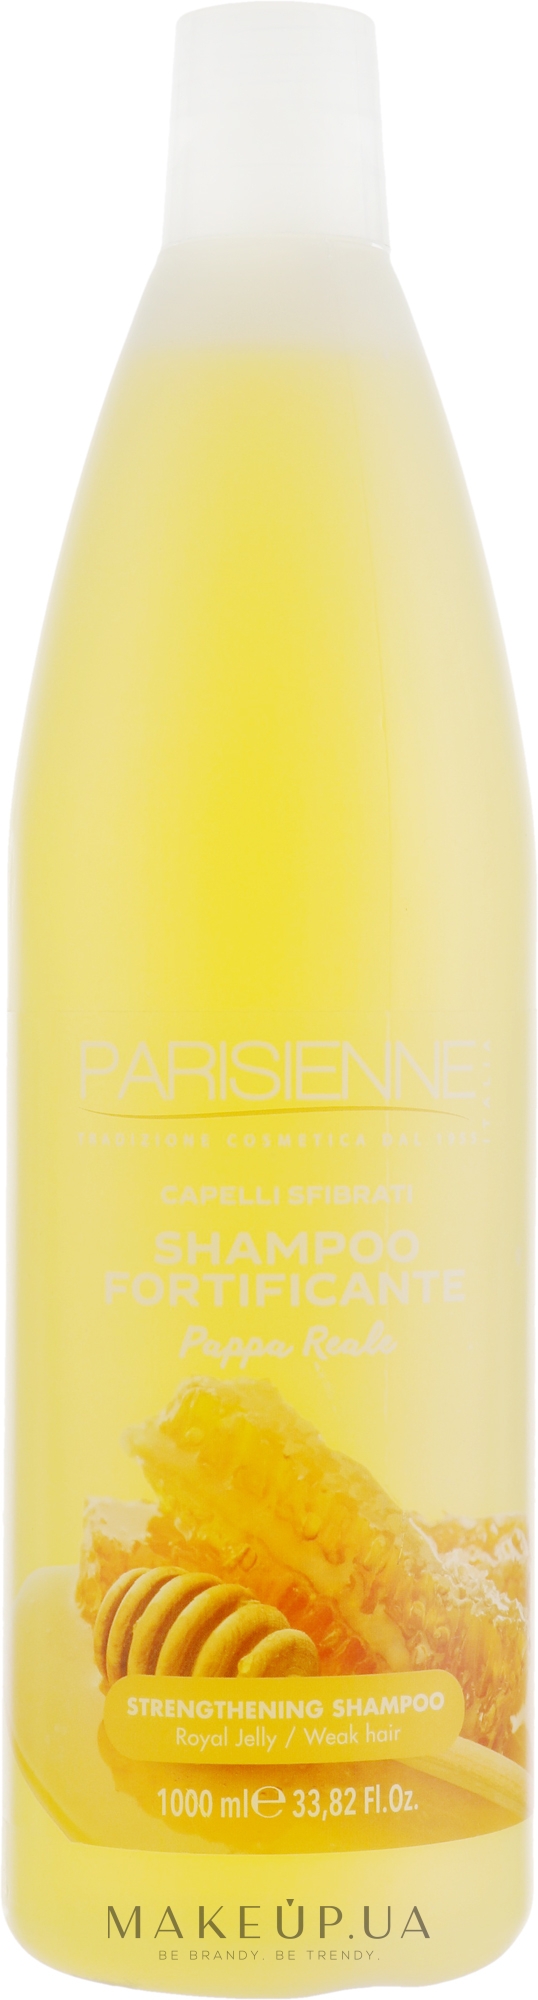 Шампунь "Зміцнювальний" - Parisienne Italia Strengthening Shampoo — фото 1000ml